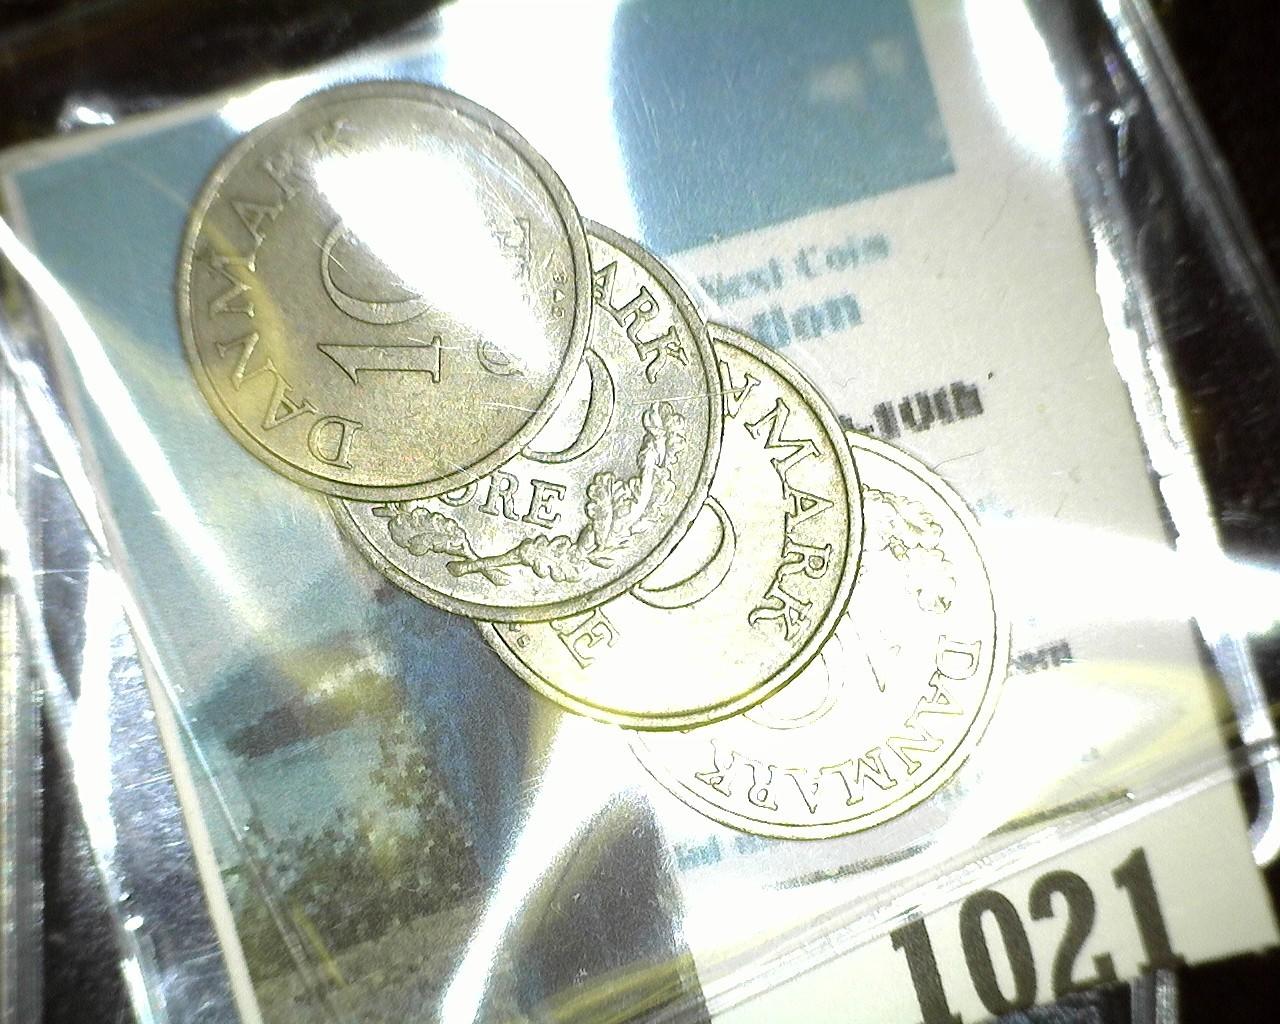 1957, 60, 61, & 62 Denmark 10 Ore Coins in nice grades.